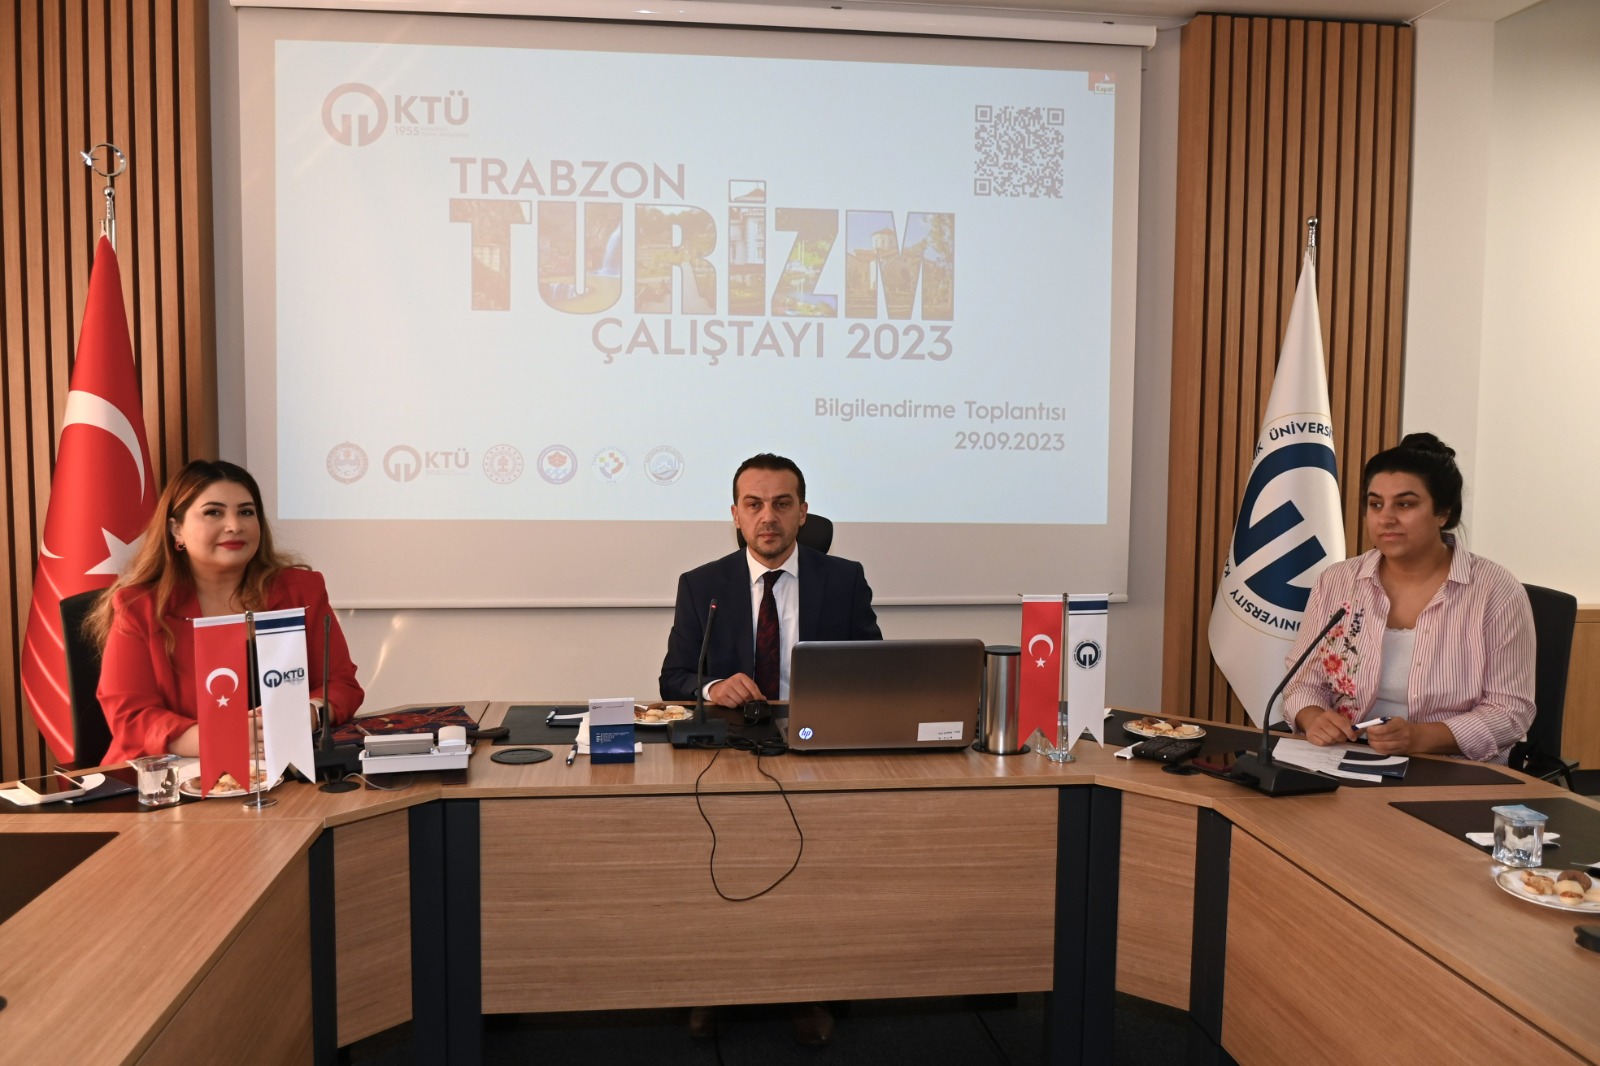 Trabzon’da “Turizm Çalıştayı” düzenlenecek